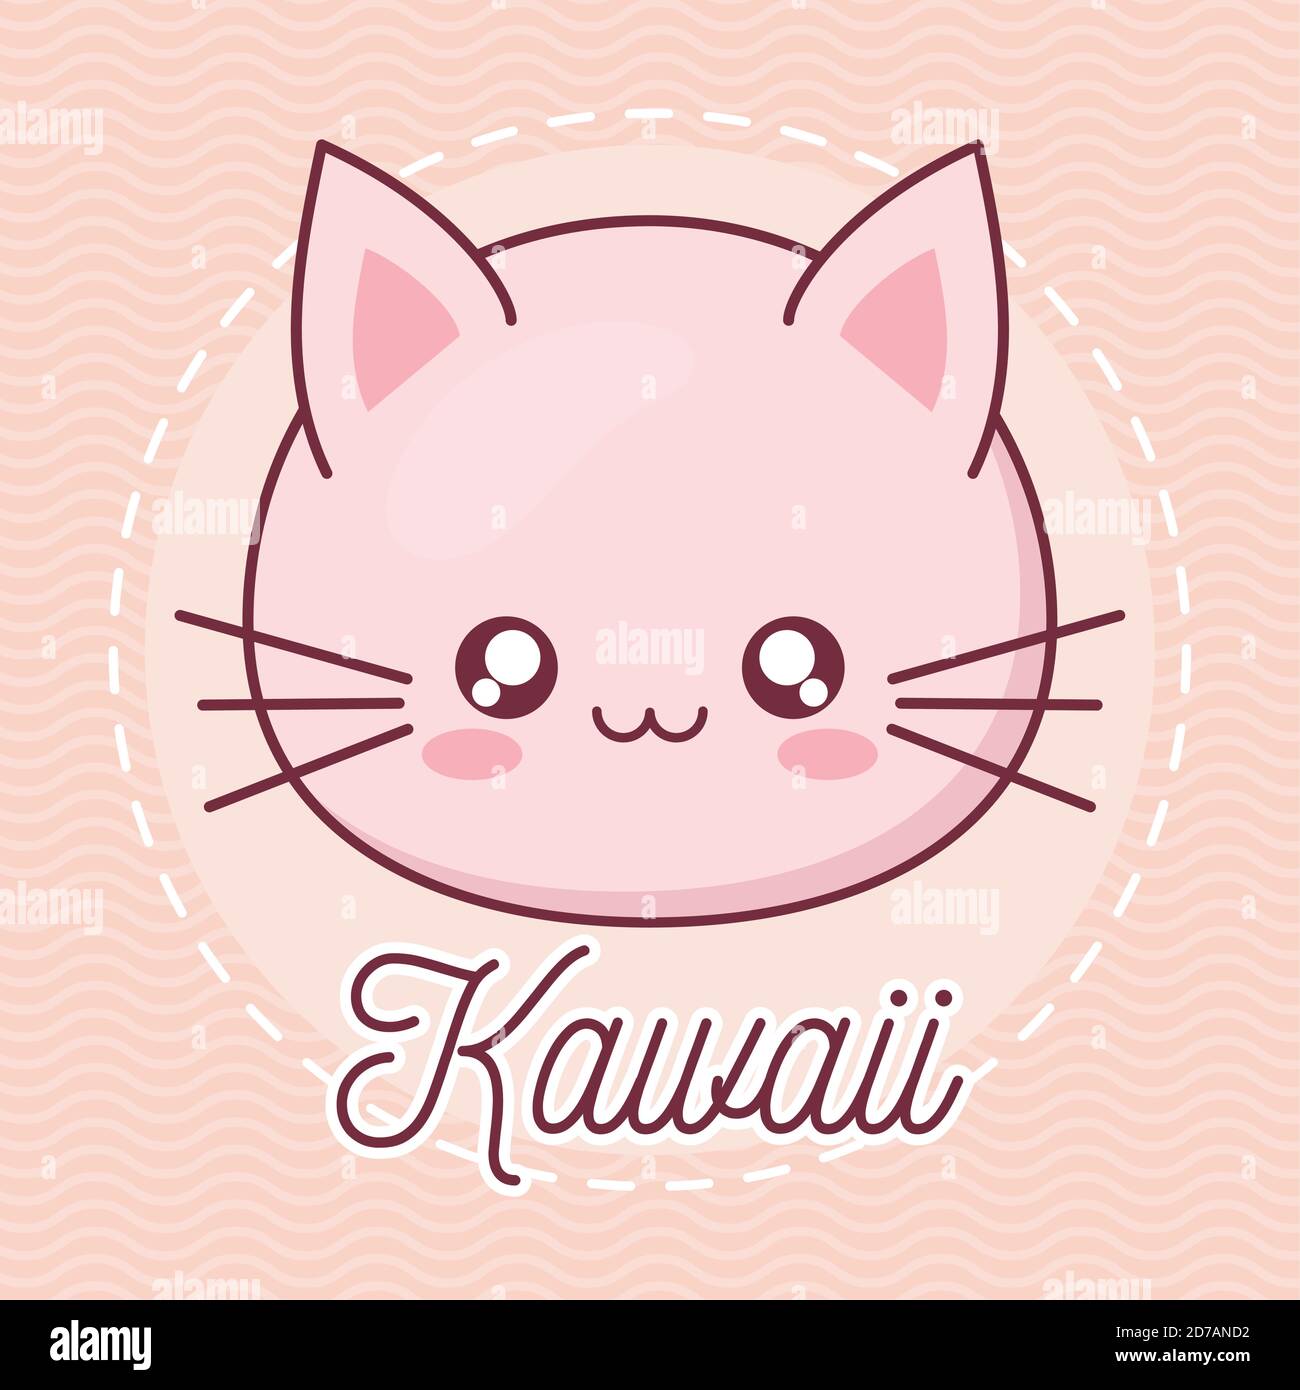 Kawaii cat animal cartoon vector design Stock Vector Image & Art - Alamy